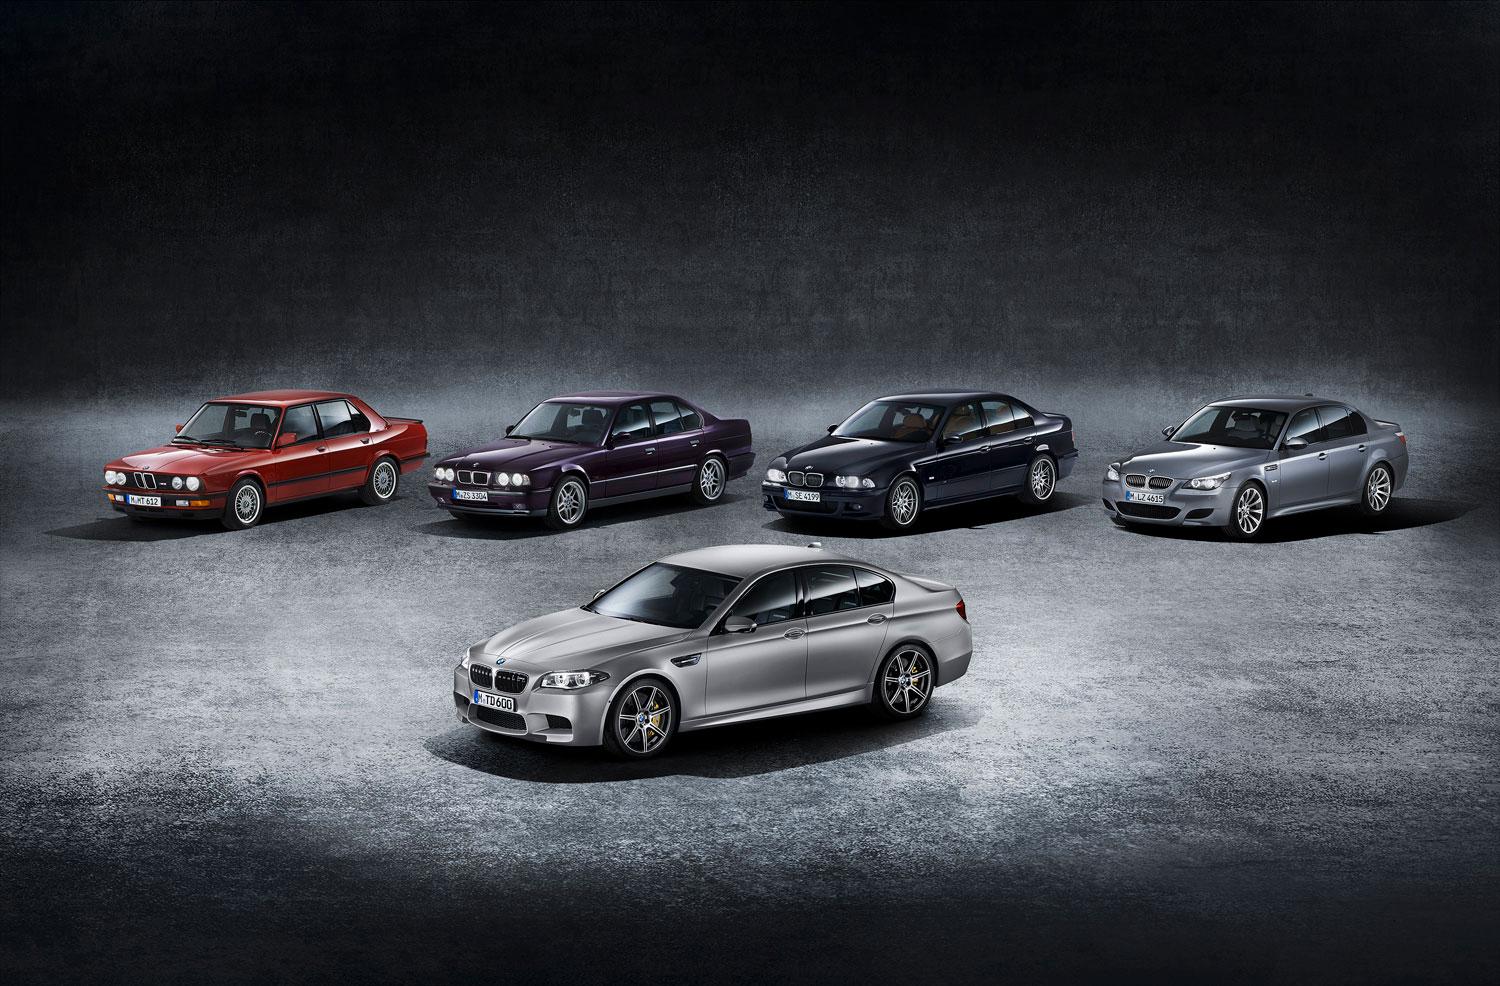 Alla generationerna av BMW:s prestandamodell M5.